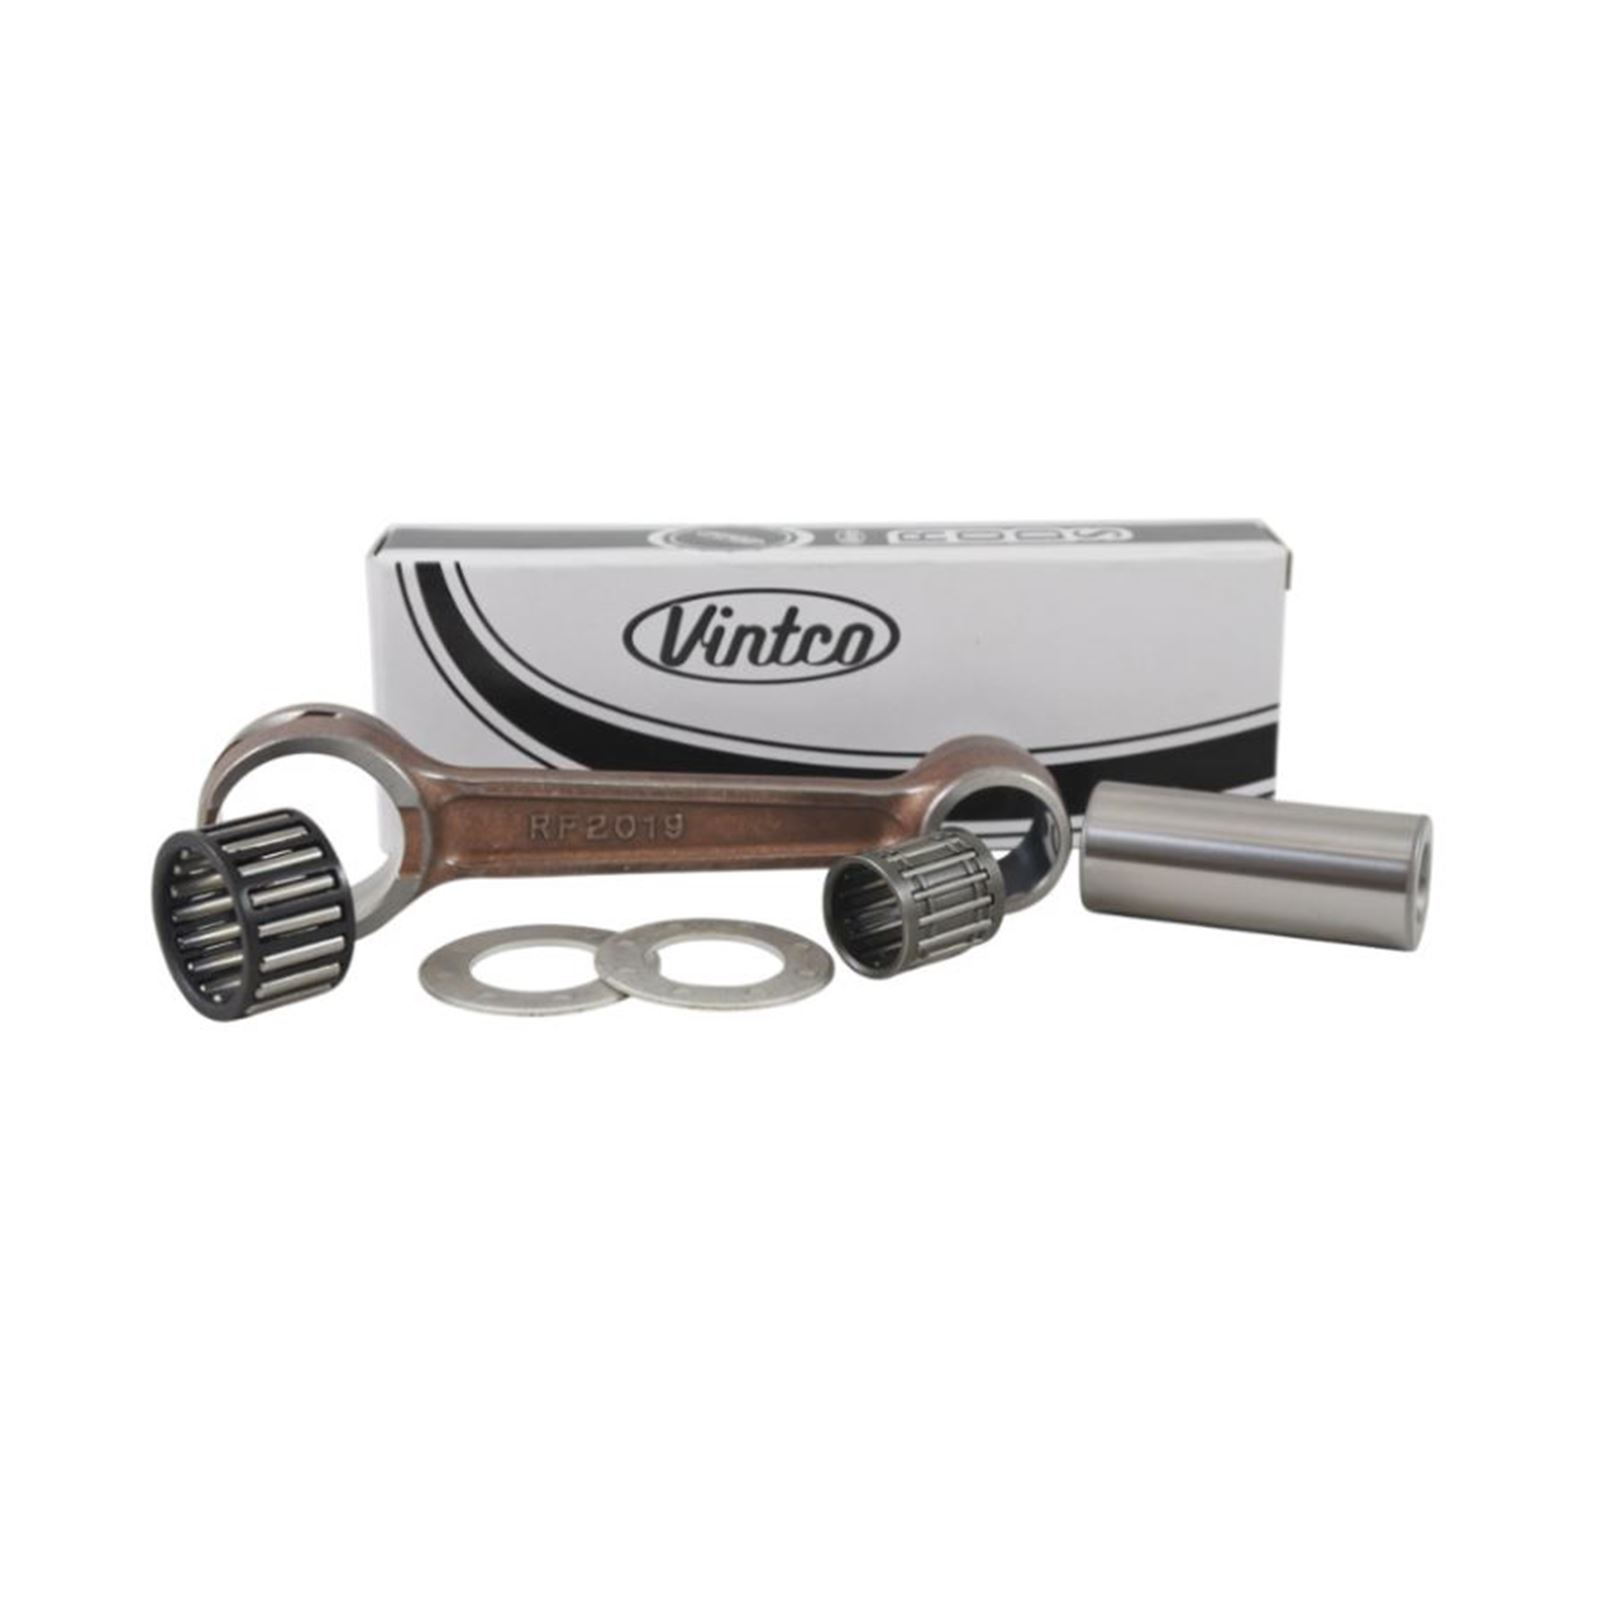 Vintco Connecting Rod Kit For Kawasaki